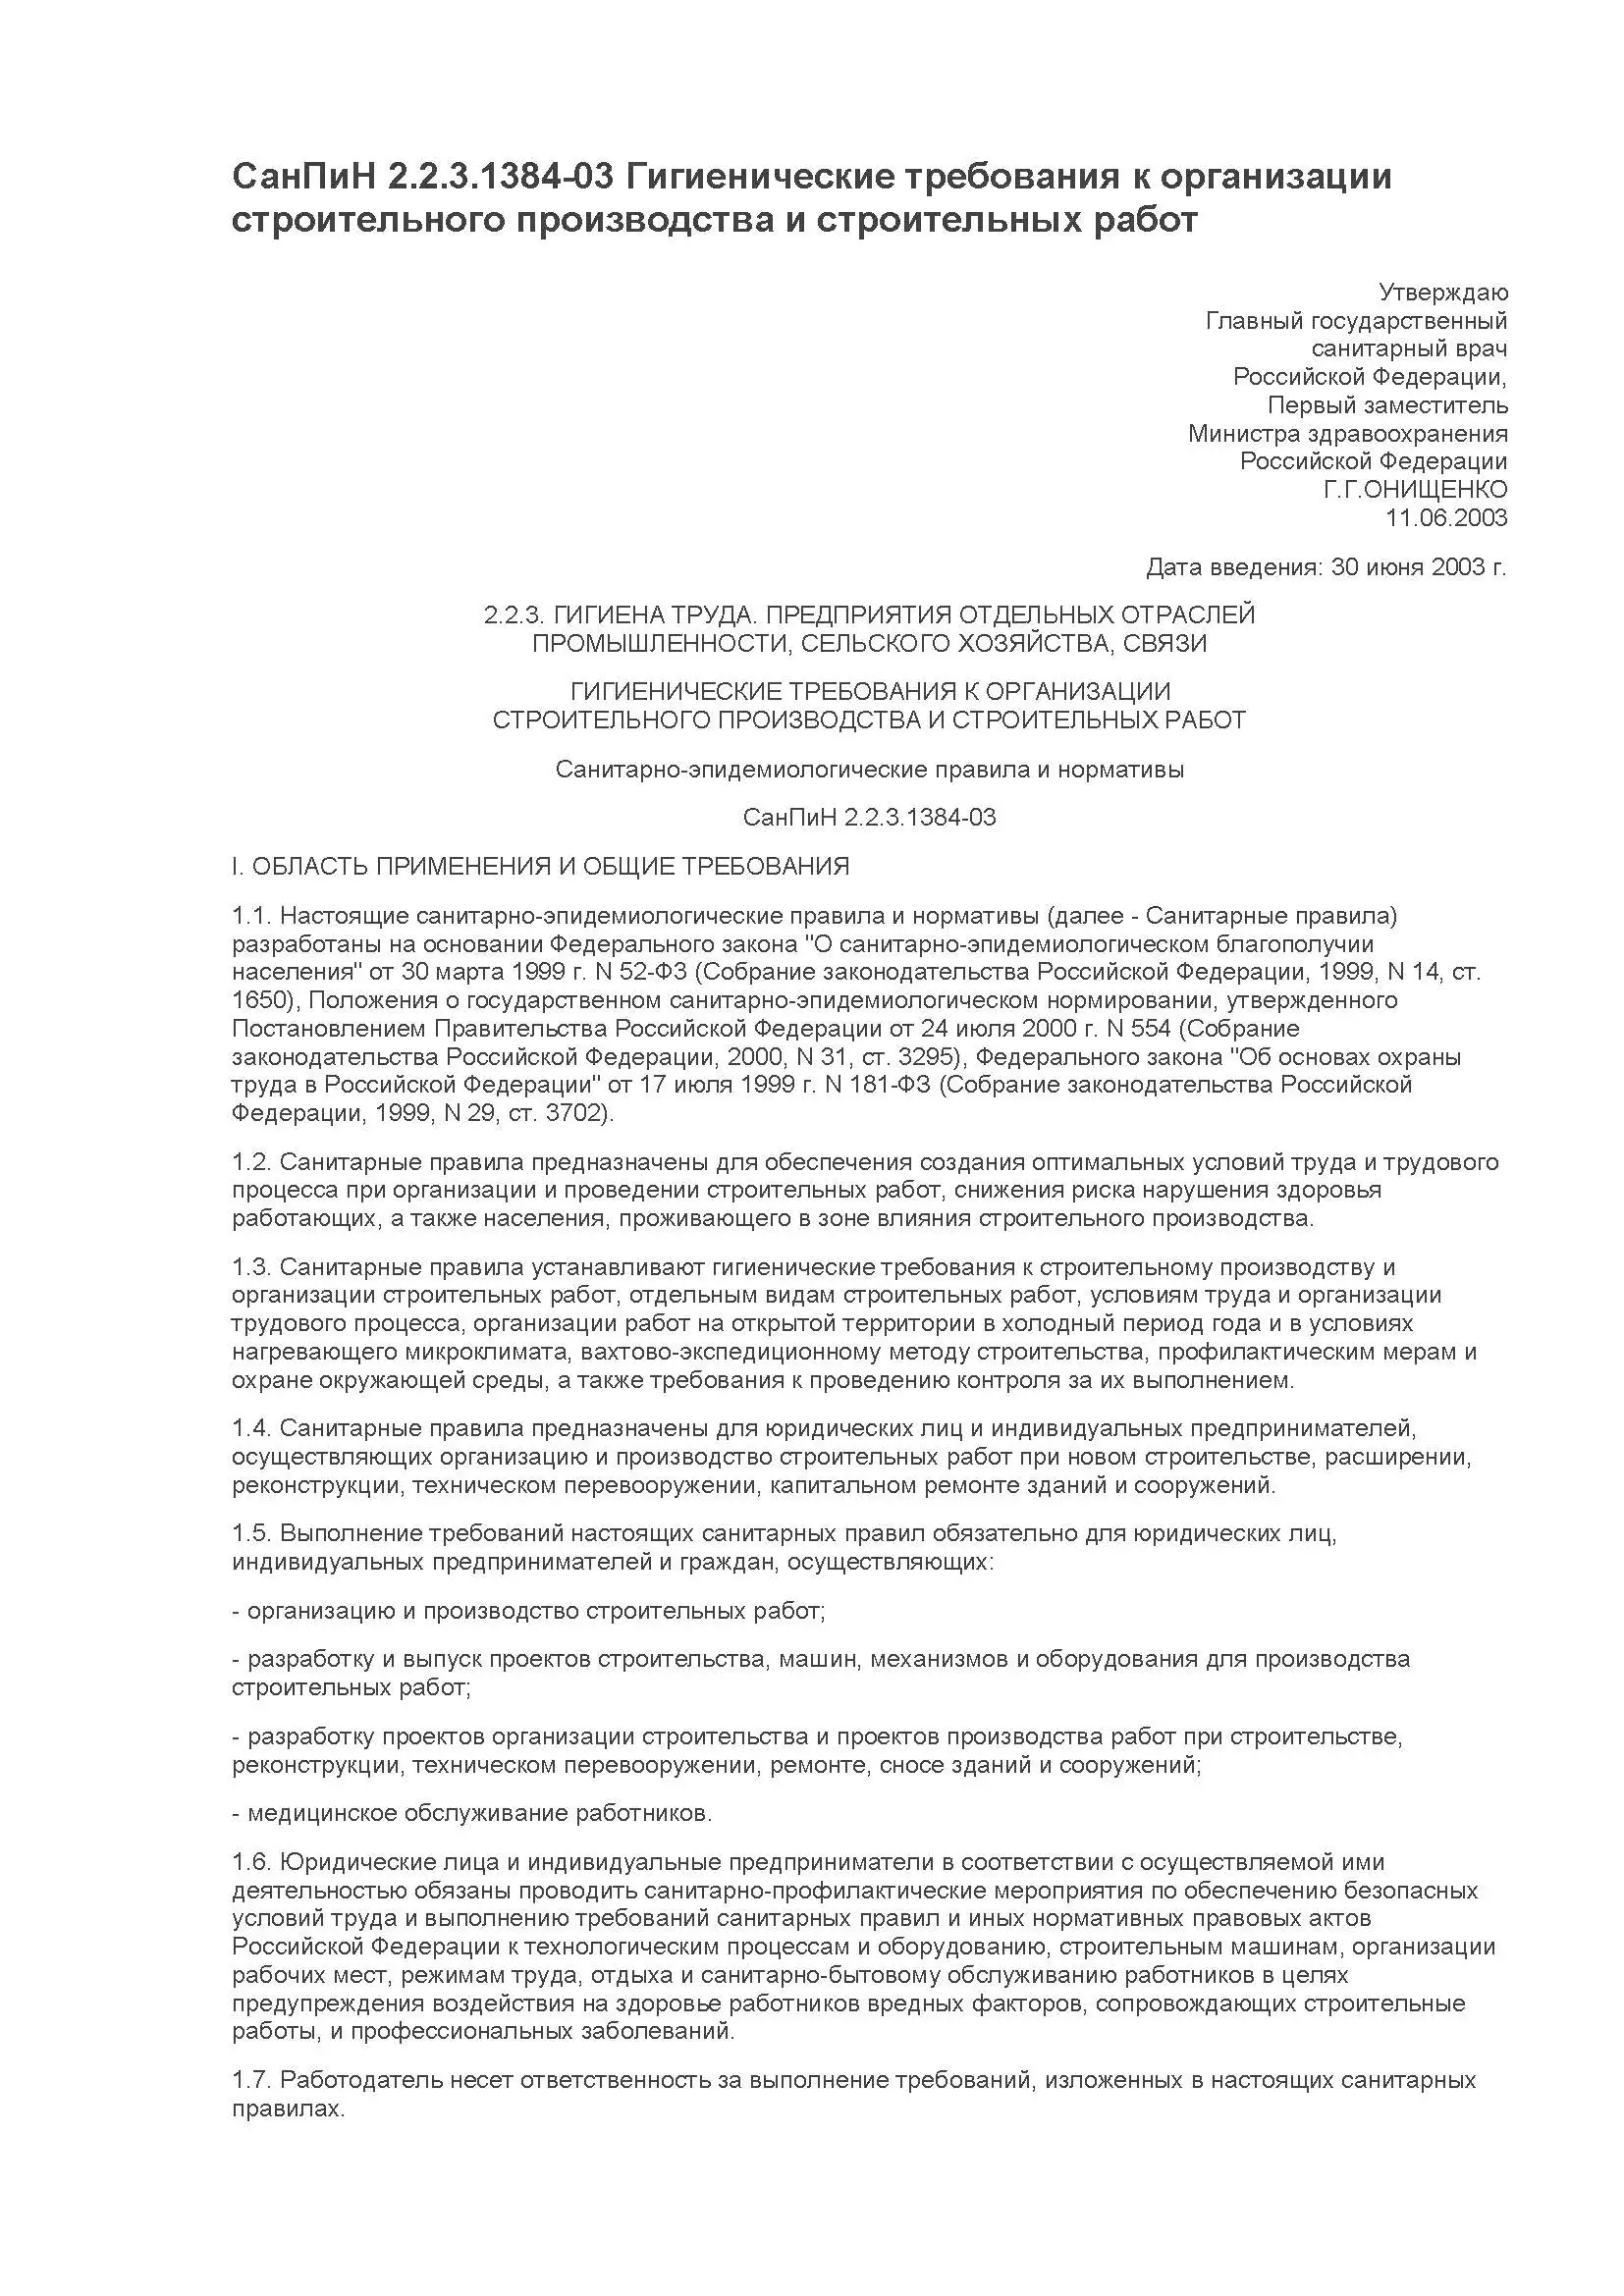 СанПиН 2.2.3.1384-03 с учетом изменений от 3 сентября 2010 года. Гигиенические требования к организации строительного производства и строительных работ